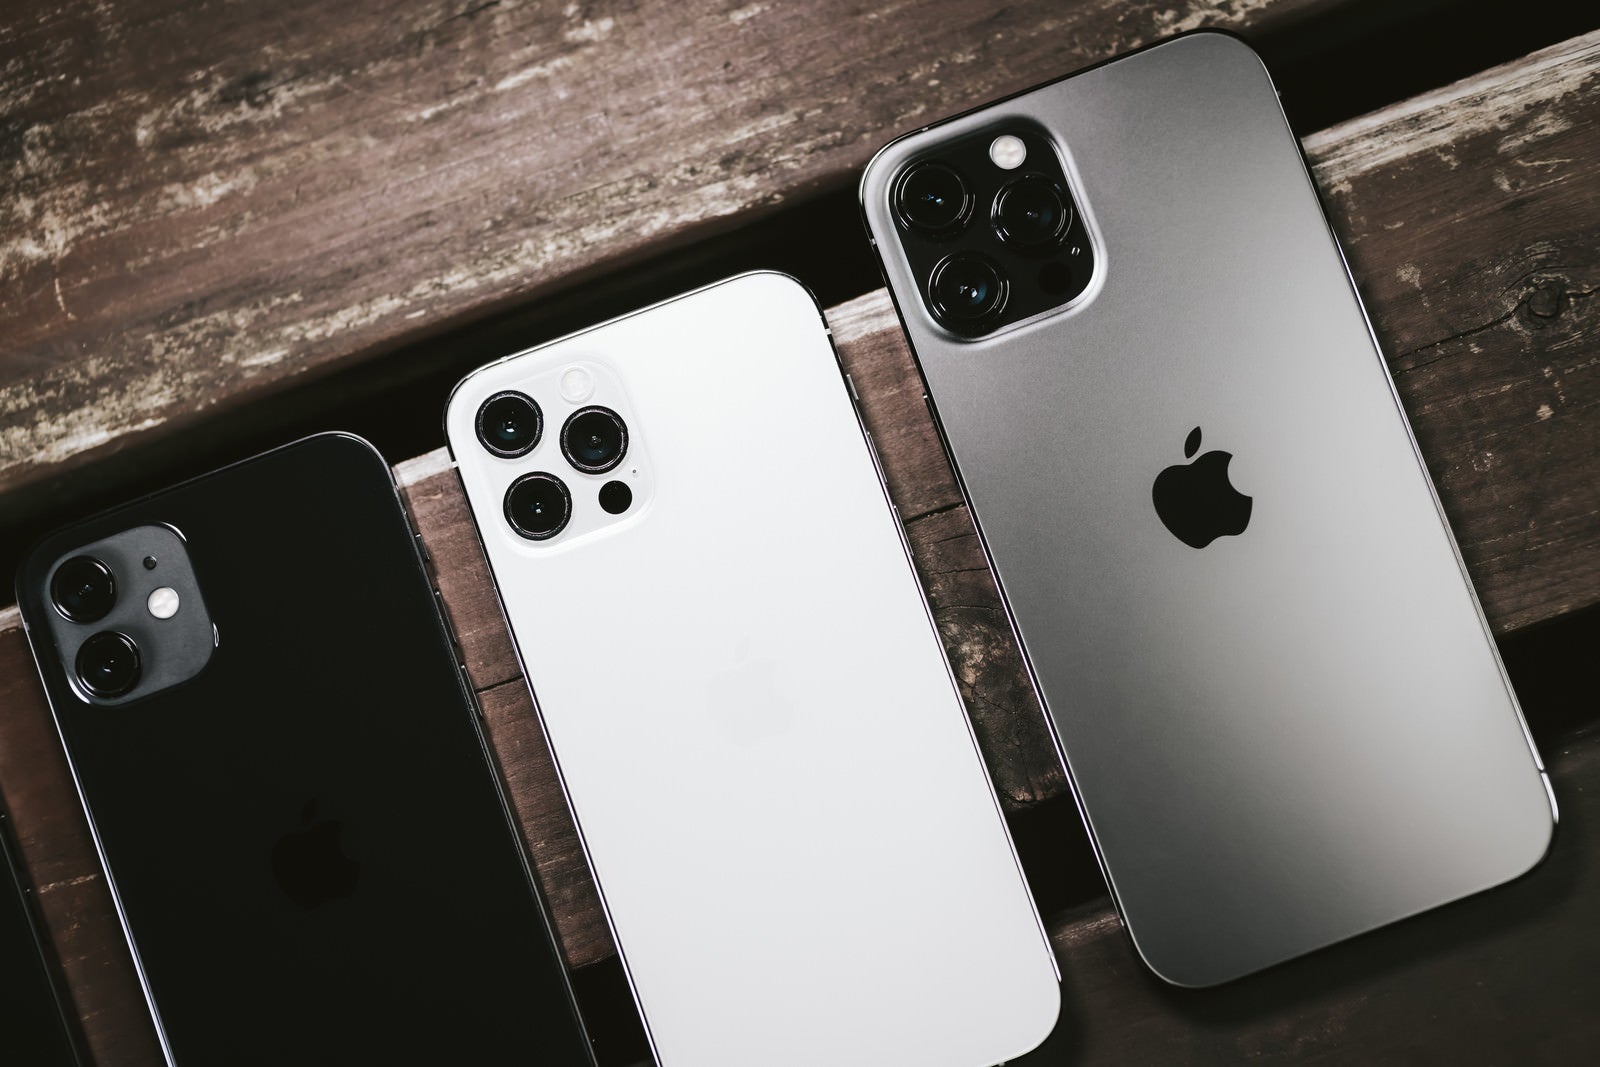 「テーブルに並んだ iPhone 12 と iPhone 12 Pro と iPhone 12 Pro Max」の写真